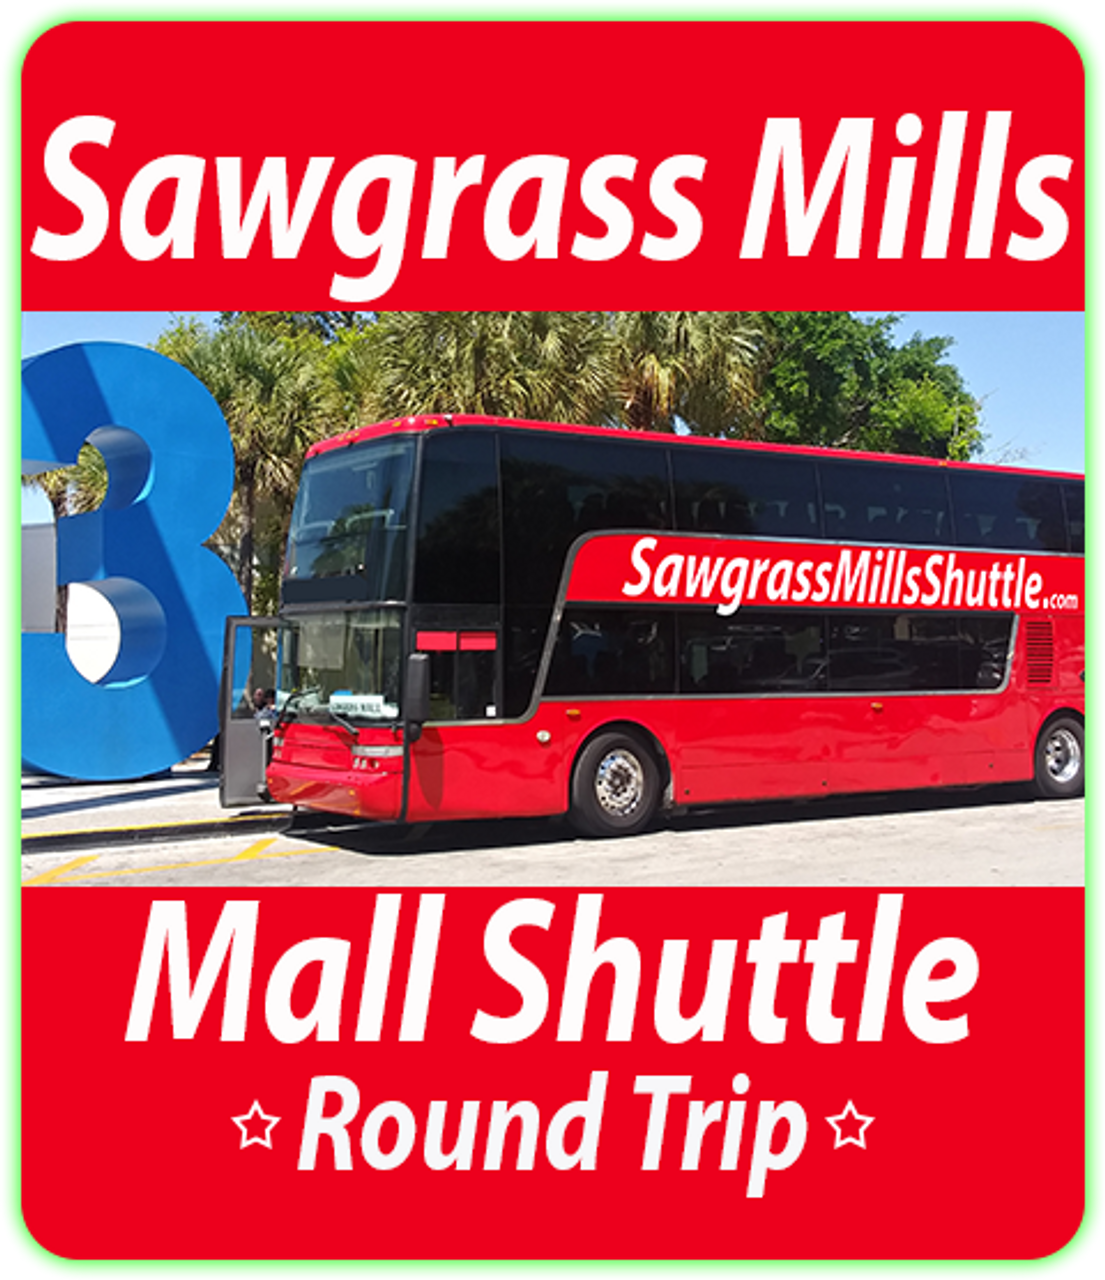 Sawgrass Mills Mall Shuttle